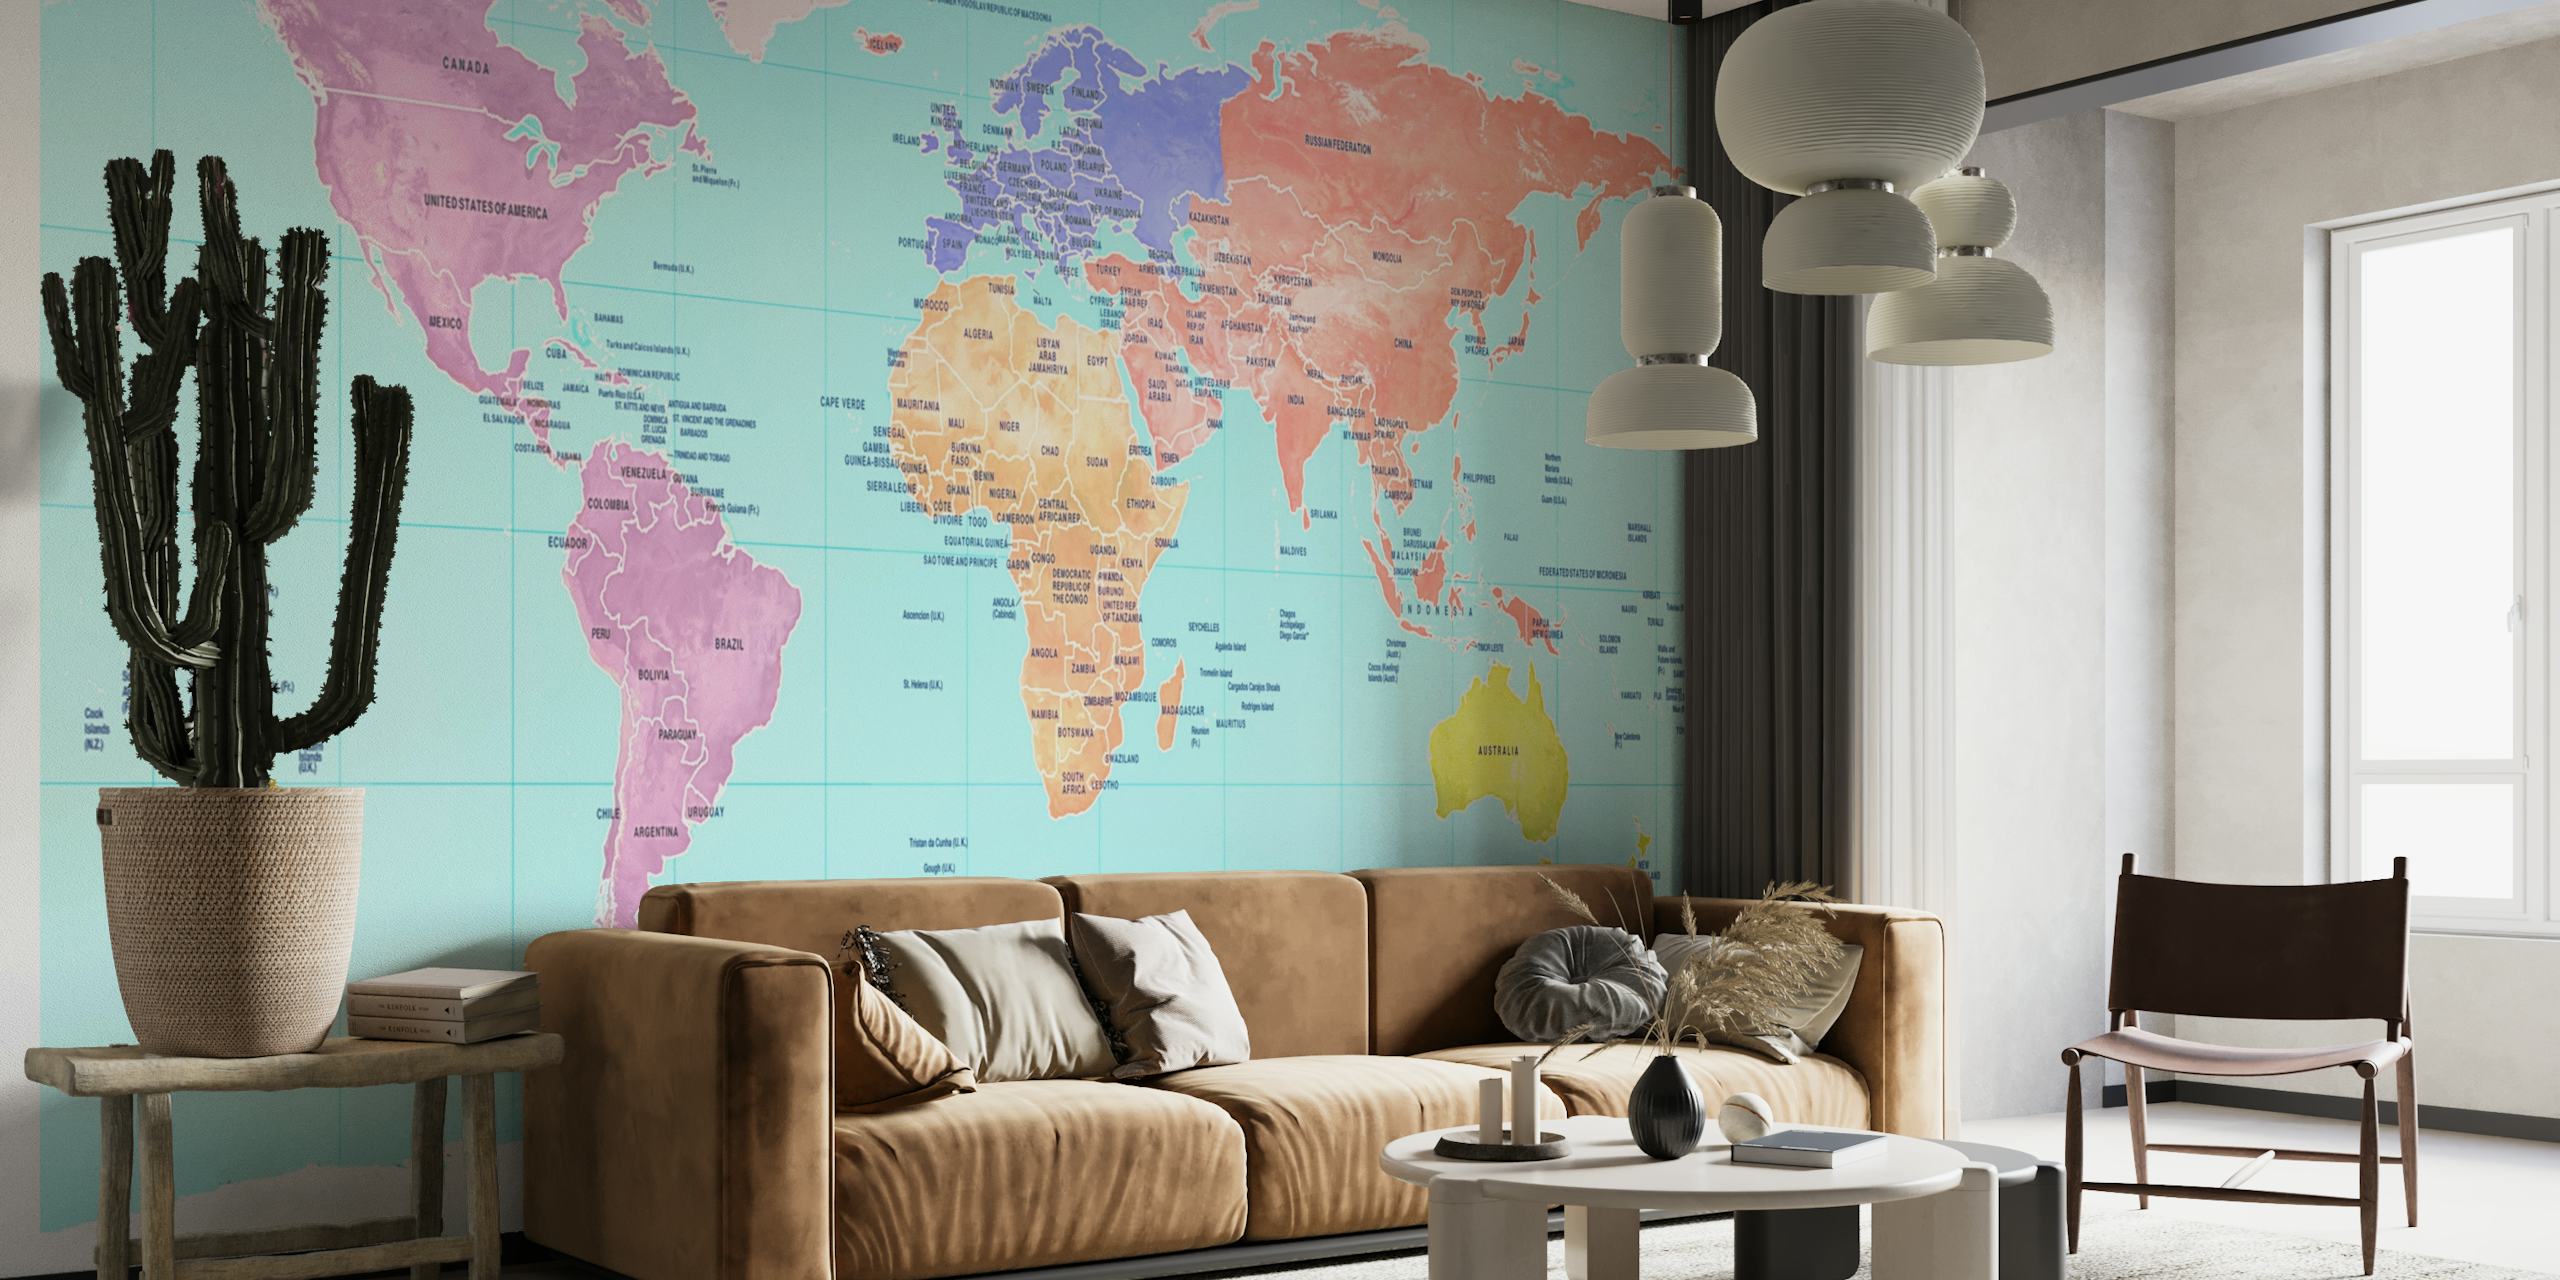 Kolorowa fototapeta z mapą świata przedstawiającą kontynenty w różnych odcieniach